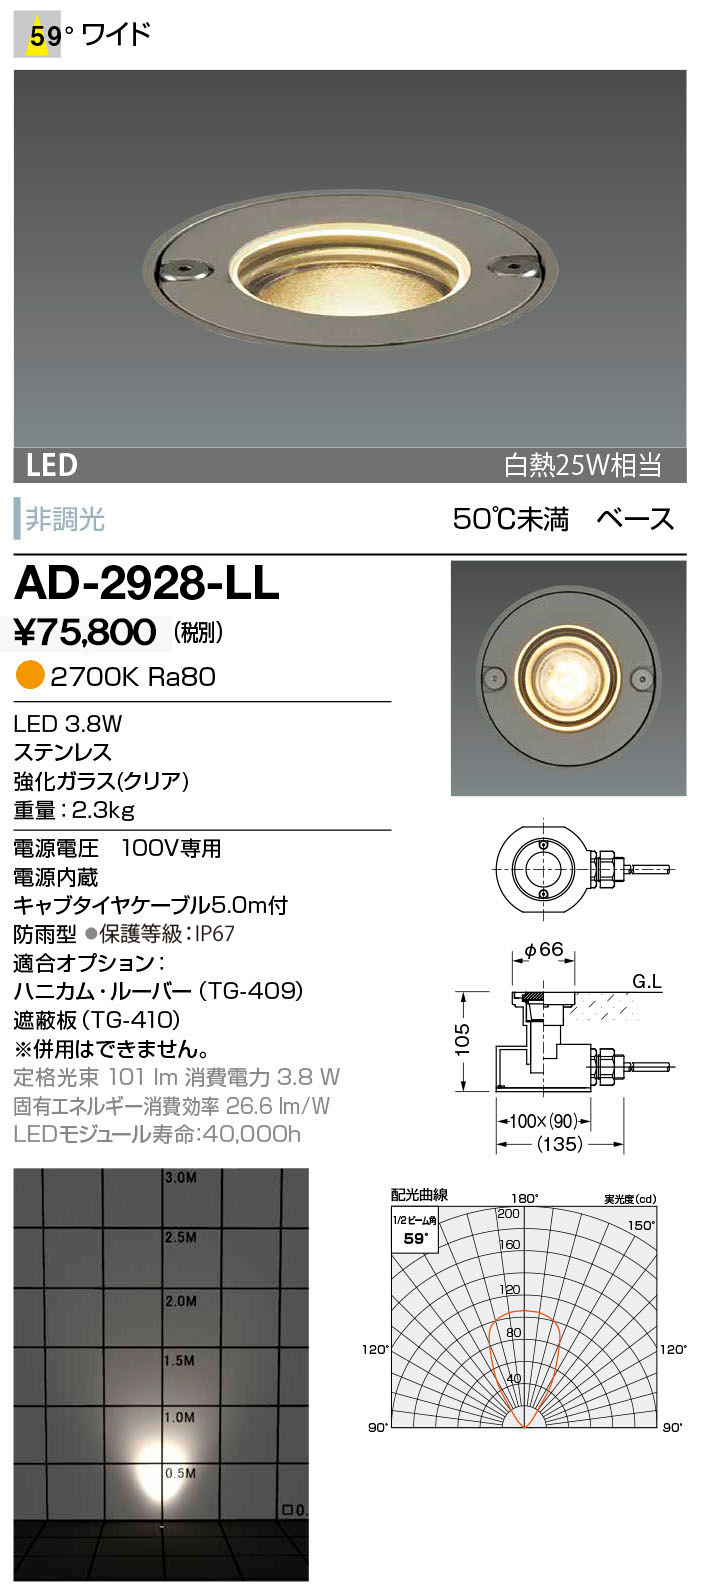 サウナ用 100℃までOK 富士メディシィエ LEDテープライト 防水 水没可 耐高温 本体拡散タイプ ケーブル5m付 サ - 2